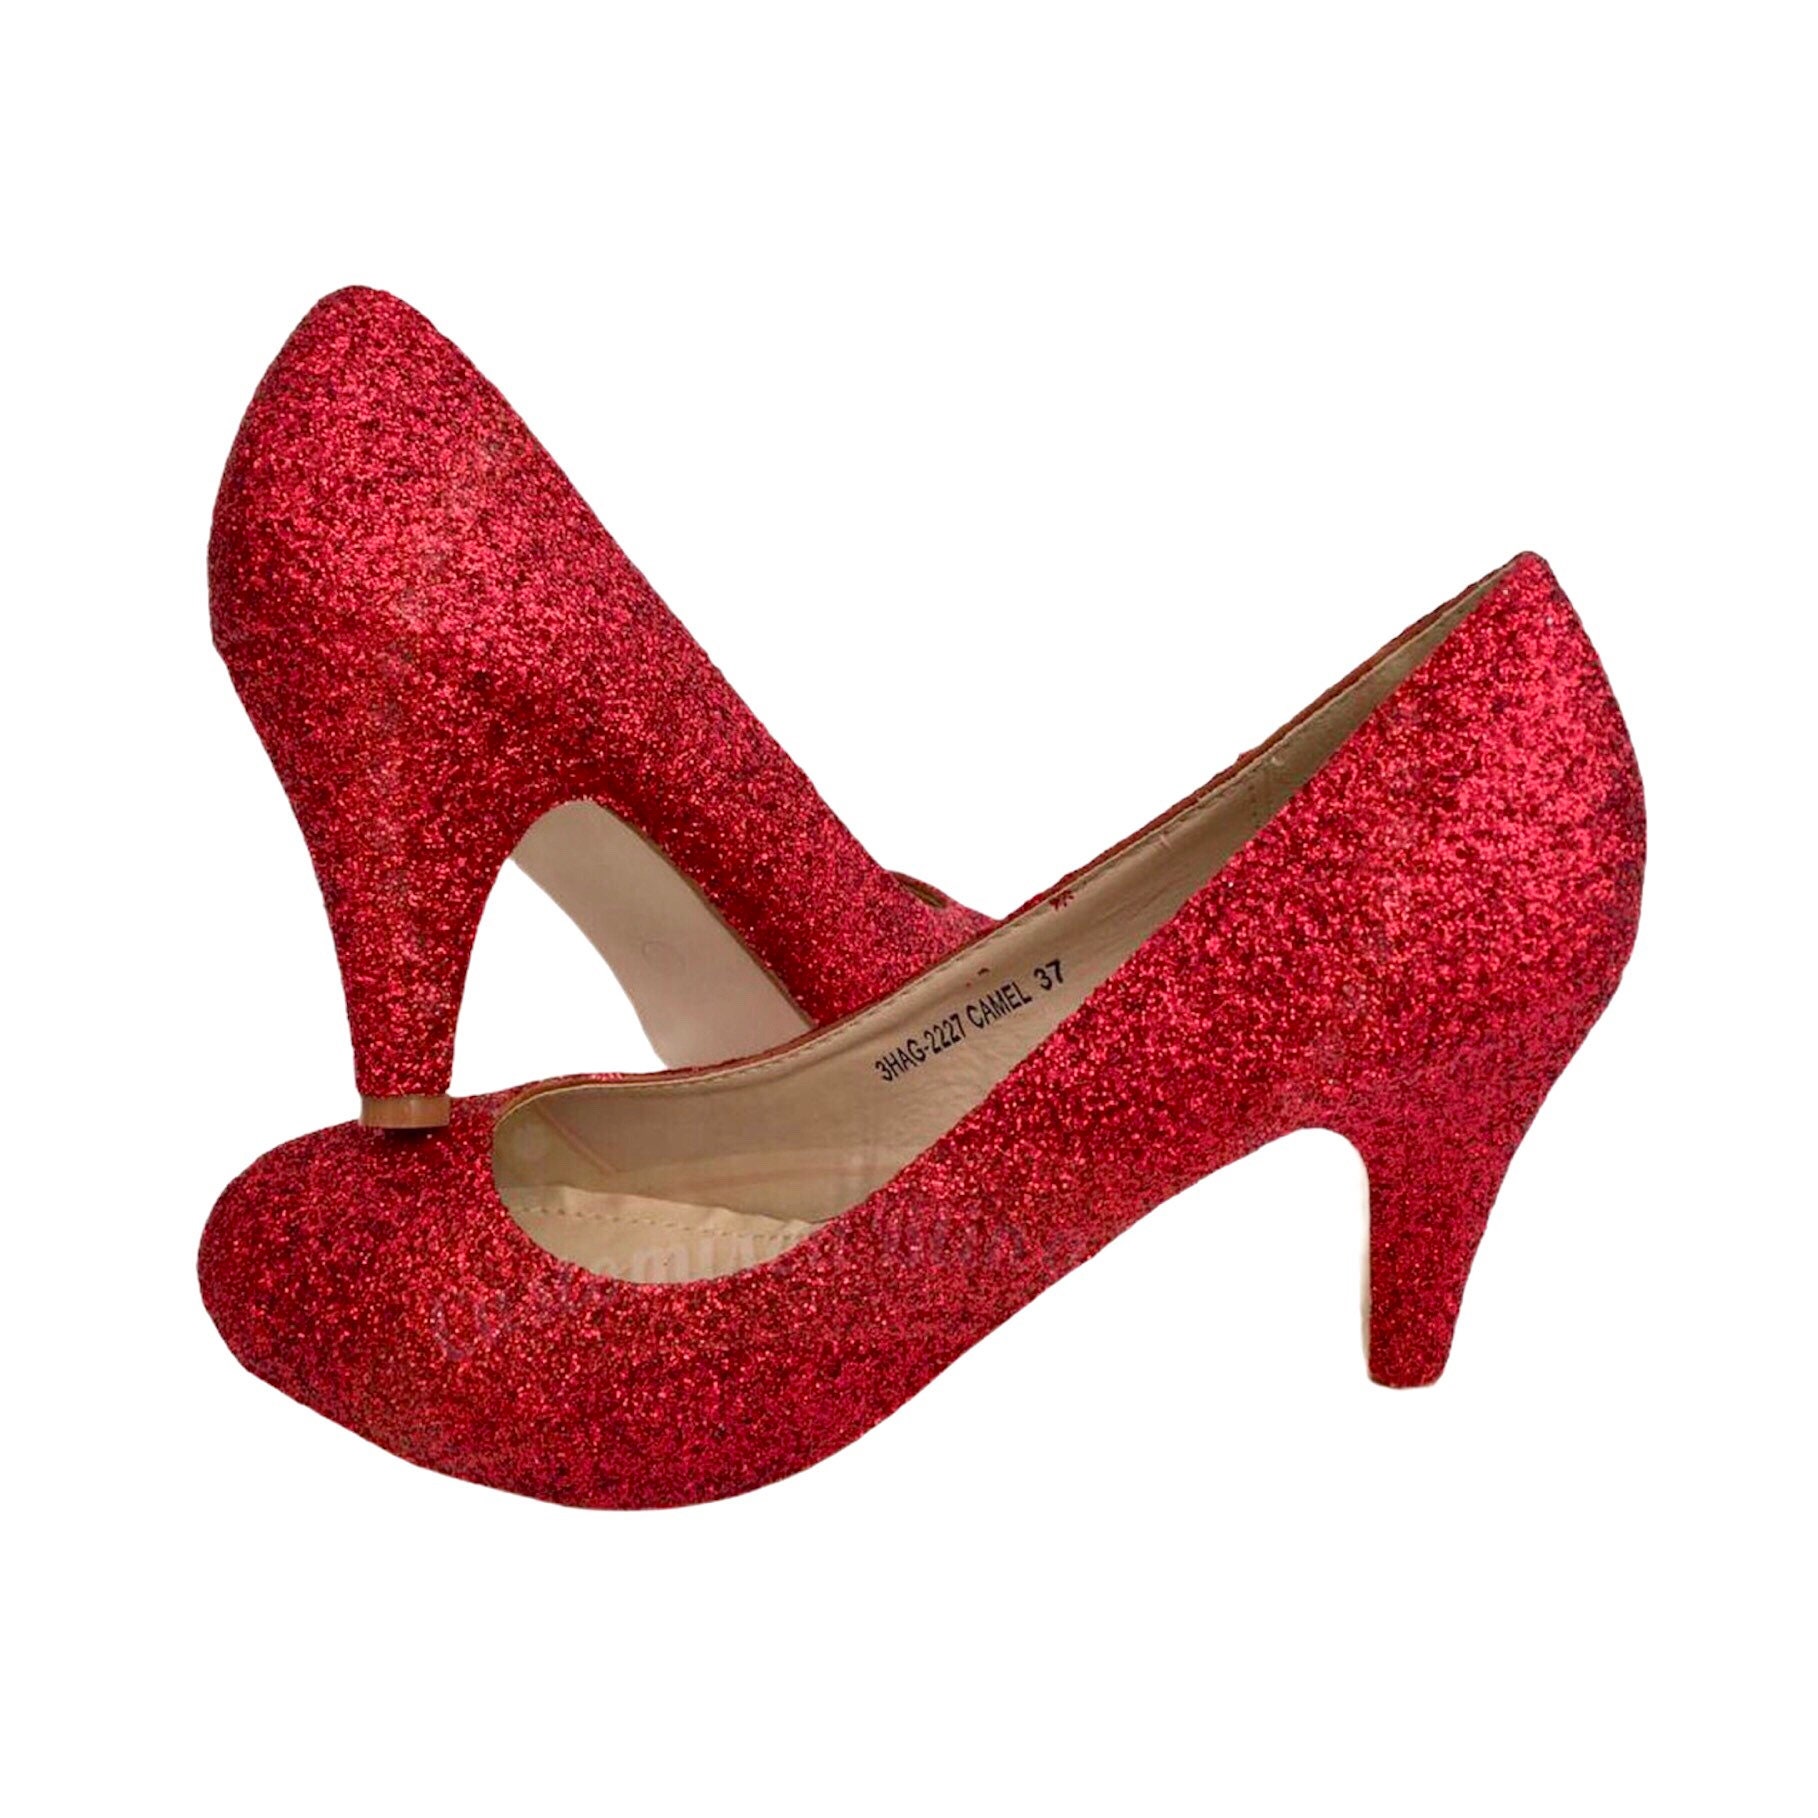 Eddike tilbagemeldinger samling Red Glitter Heels Red Court Heels Red Glitter Shoes Custom | Etsy UK